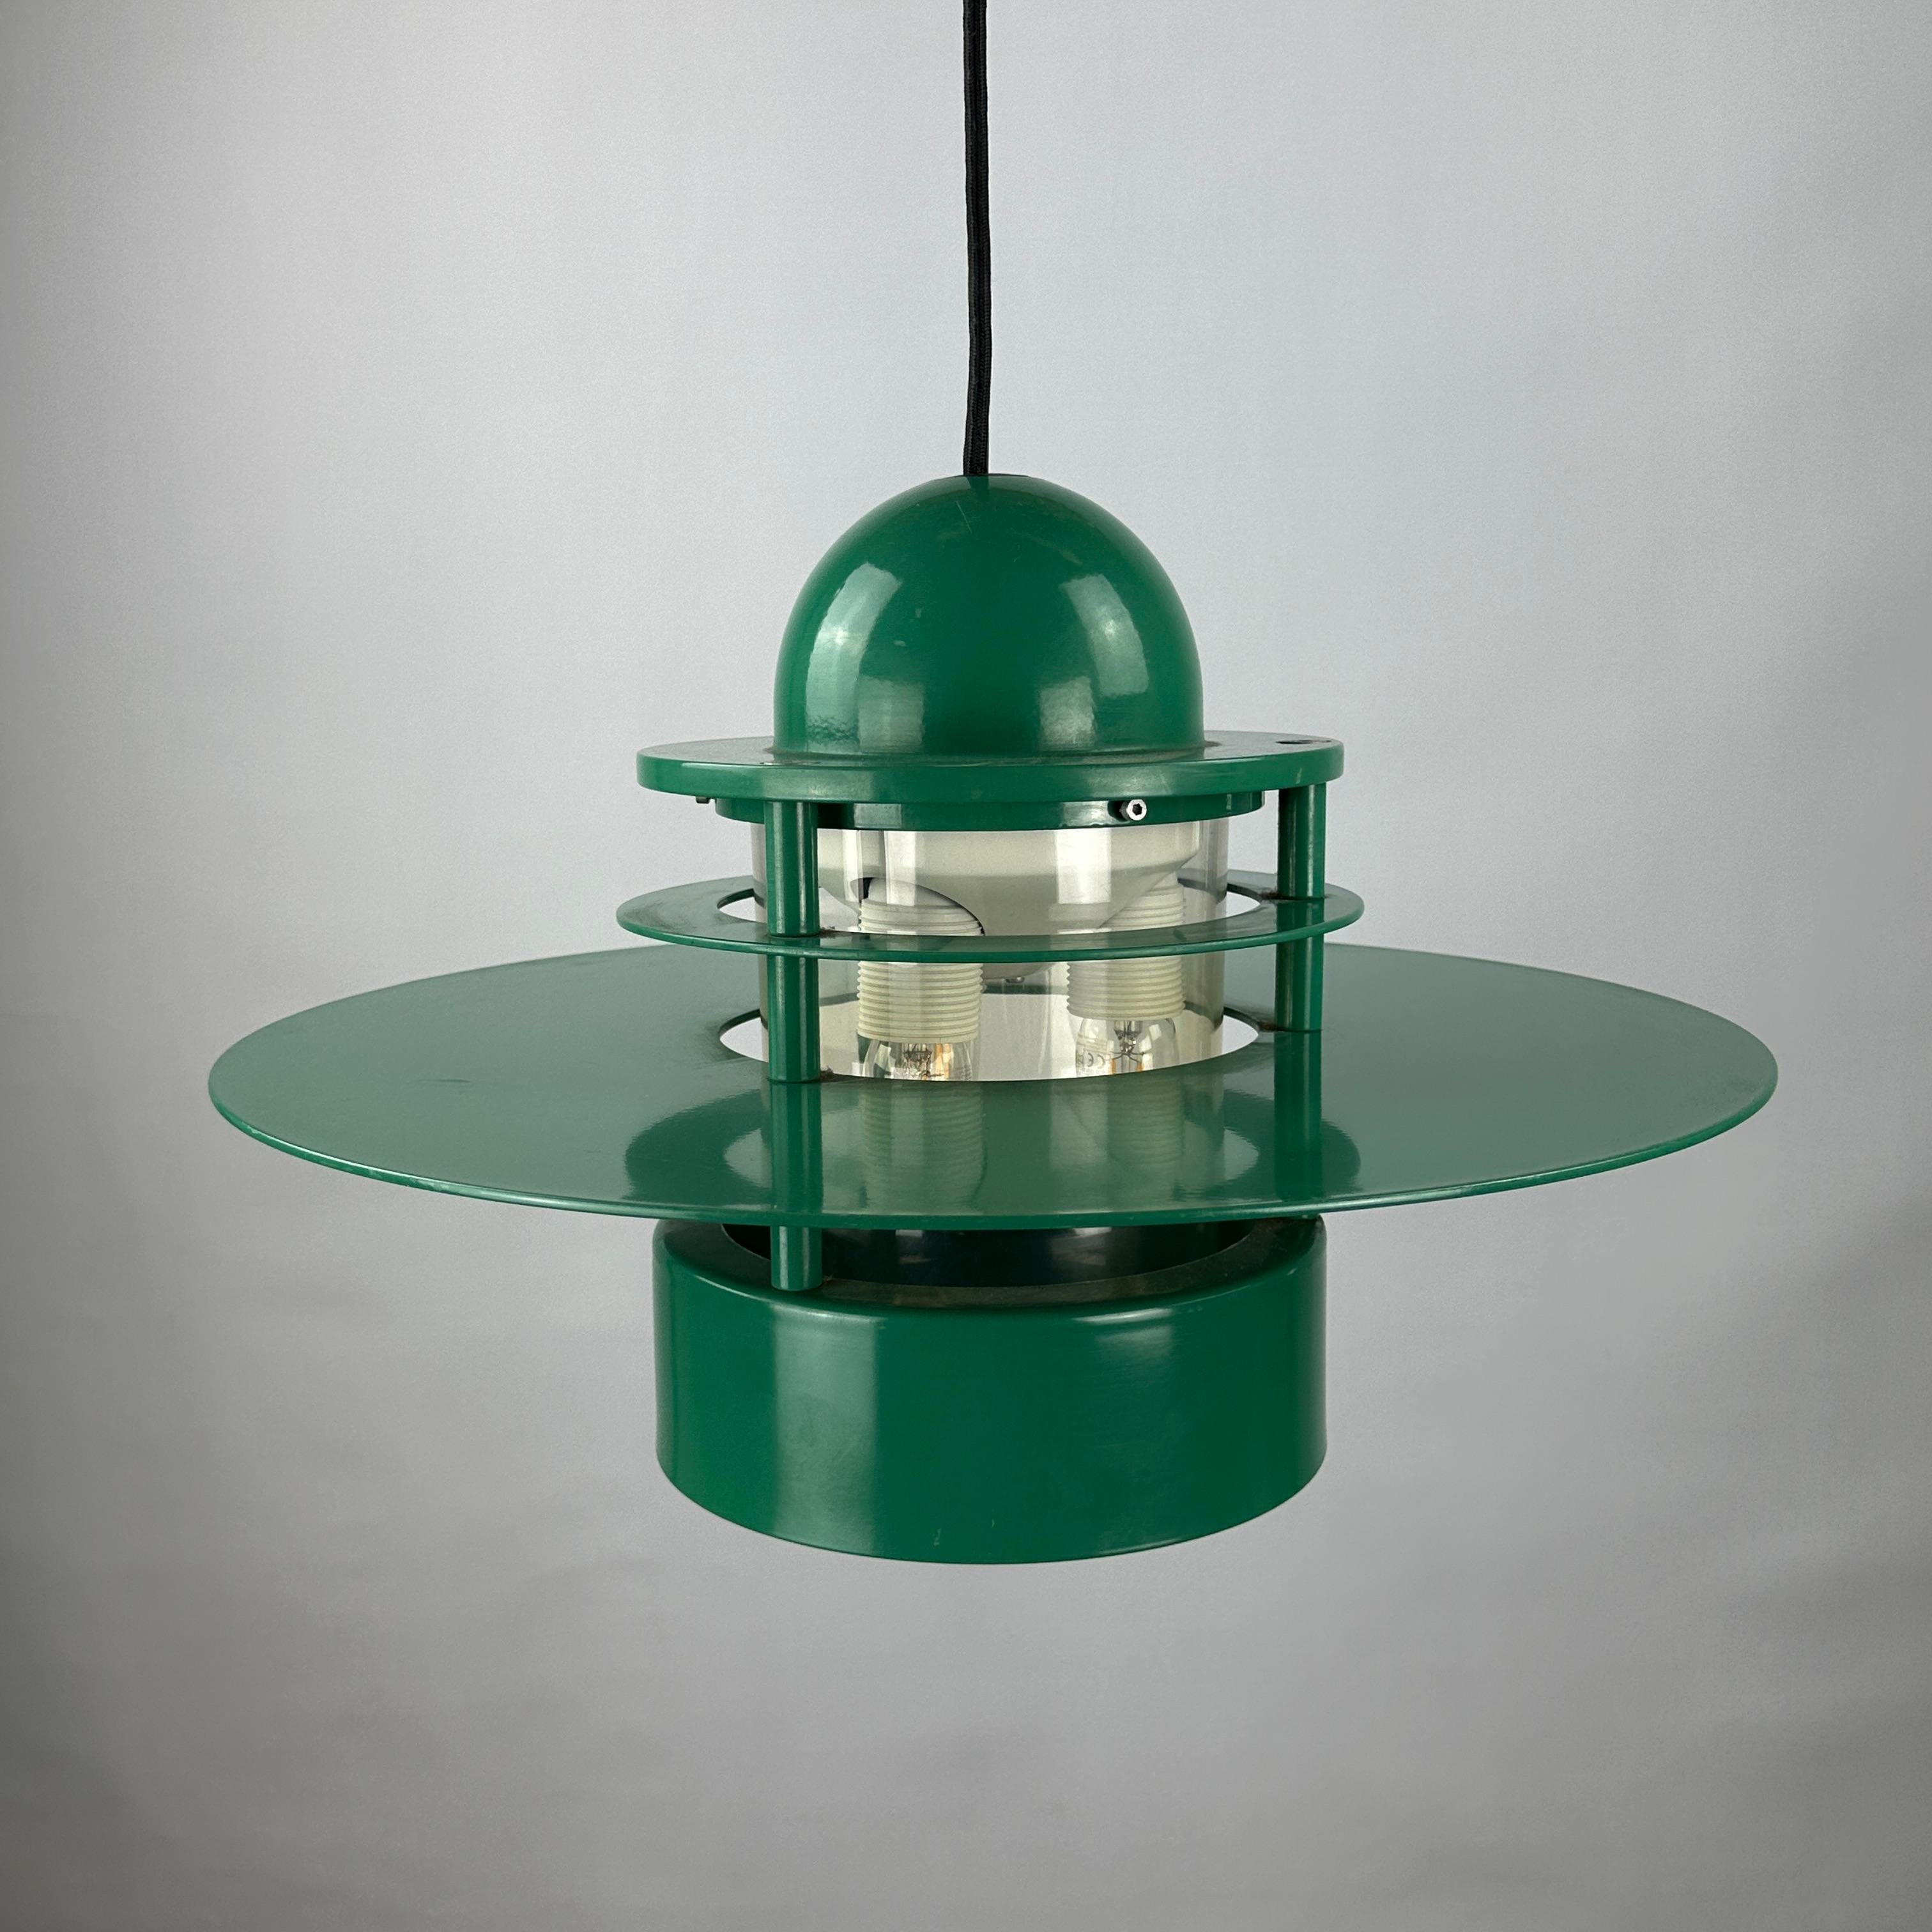 1 of 20 Louis Poulsen green pendant light Orbiter XL by Jens Møller Jensen For Sale 6